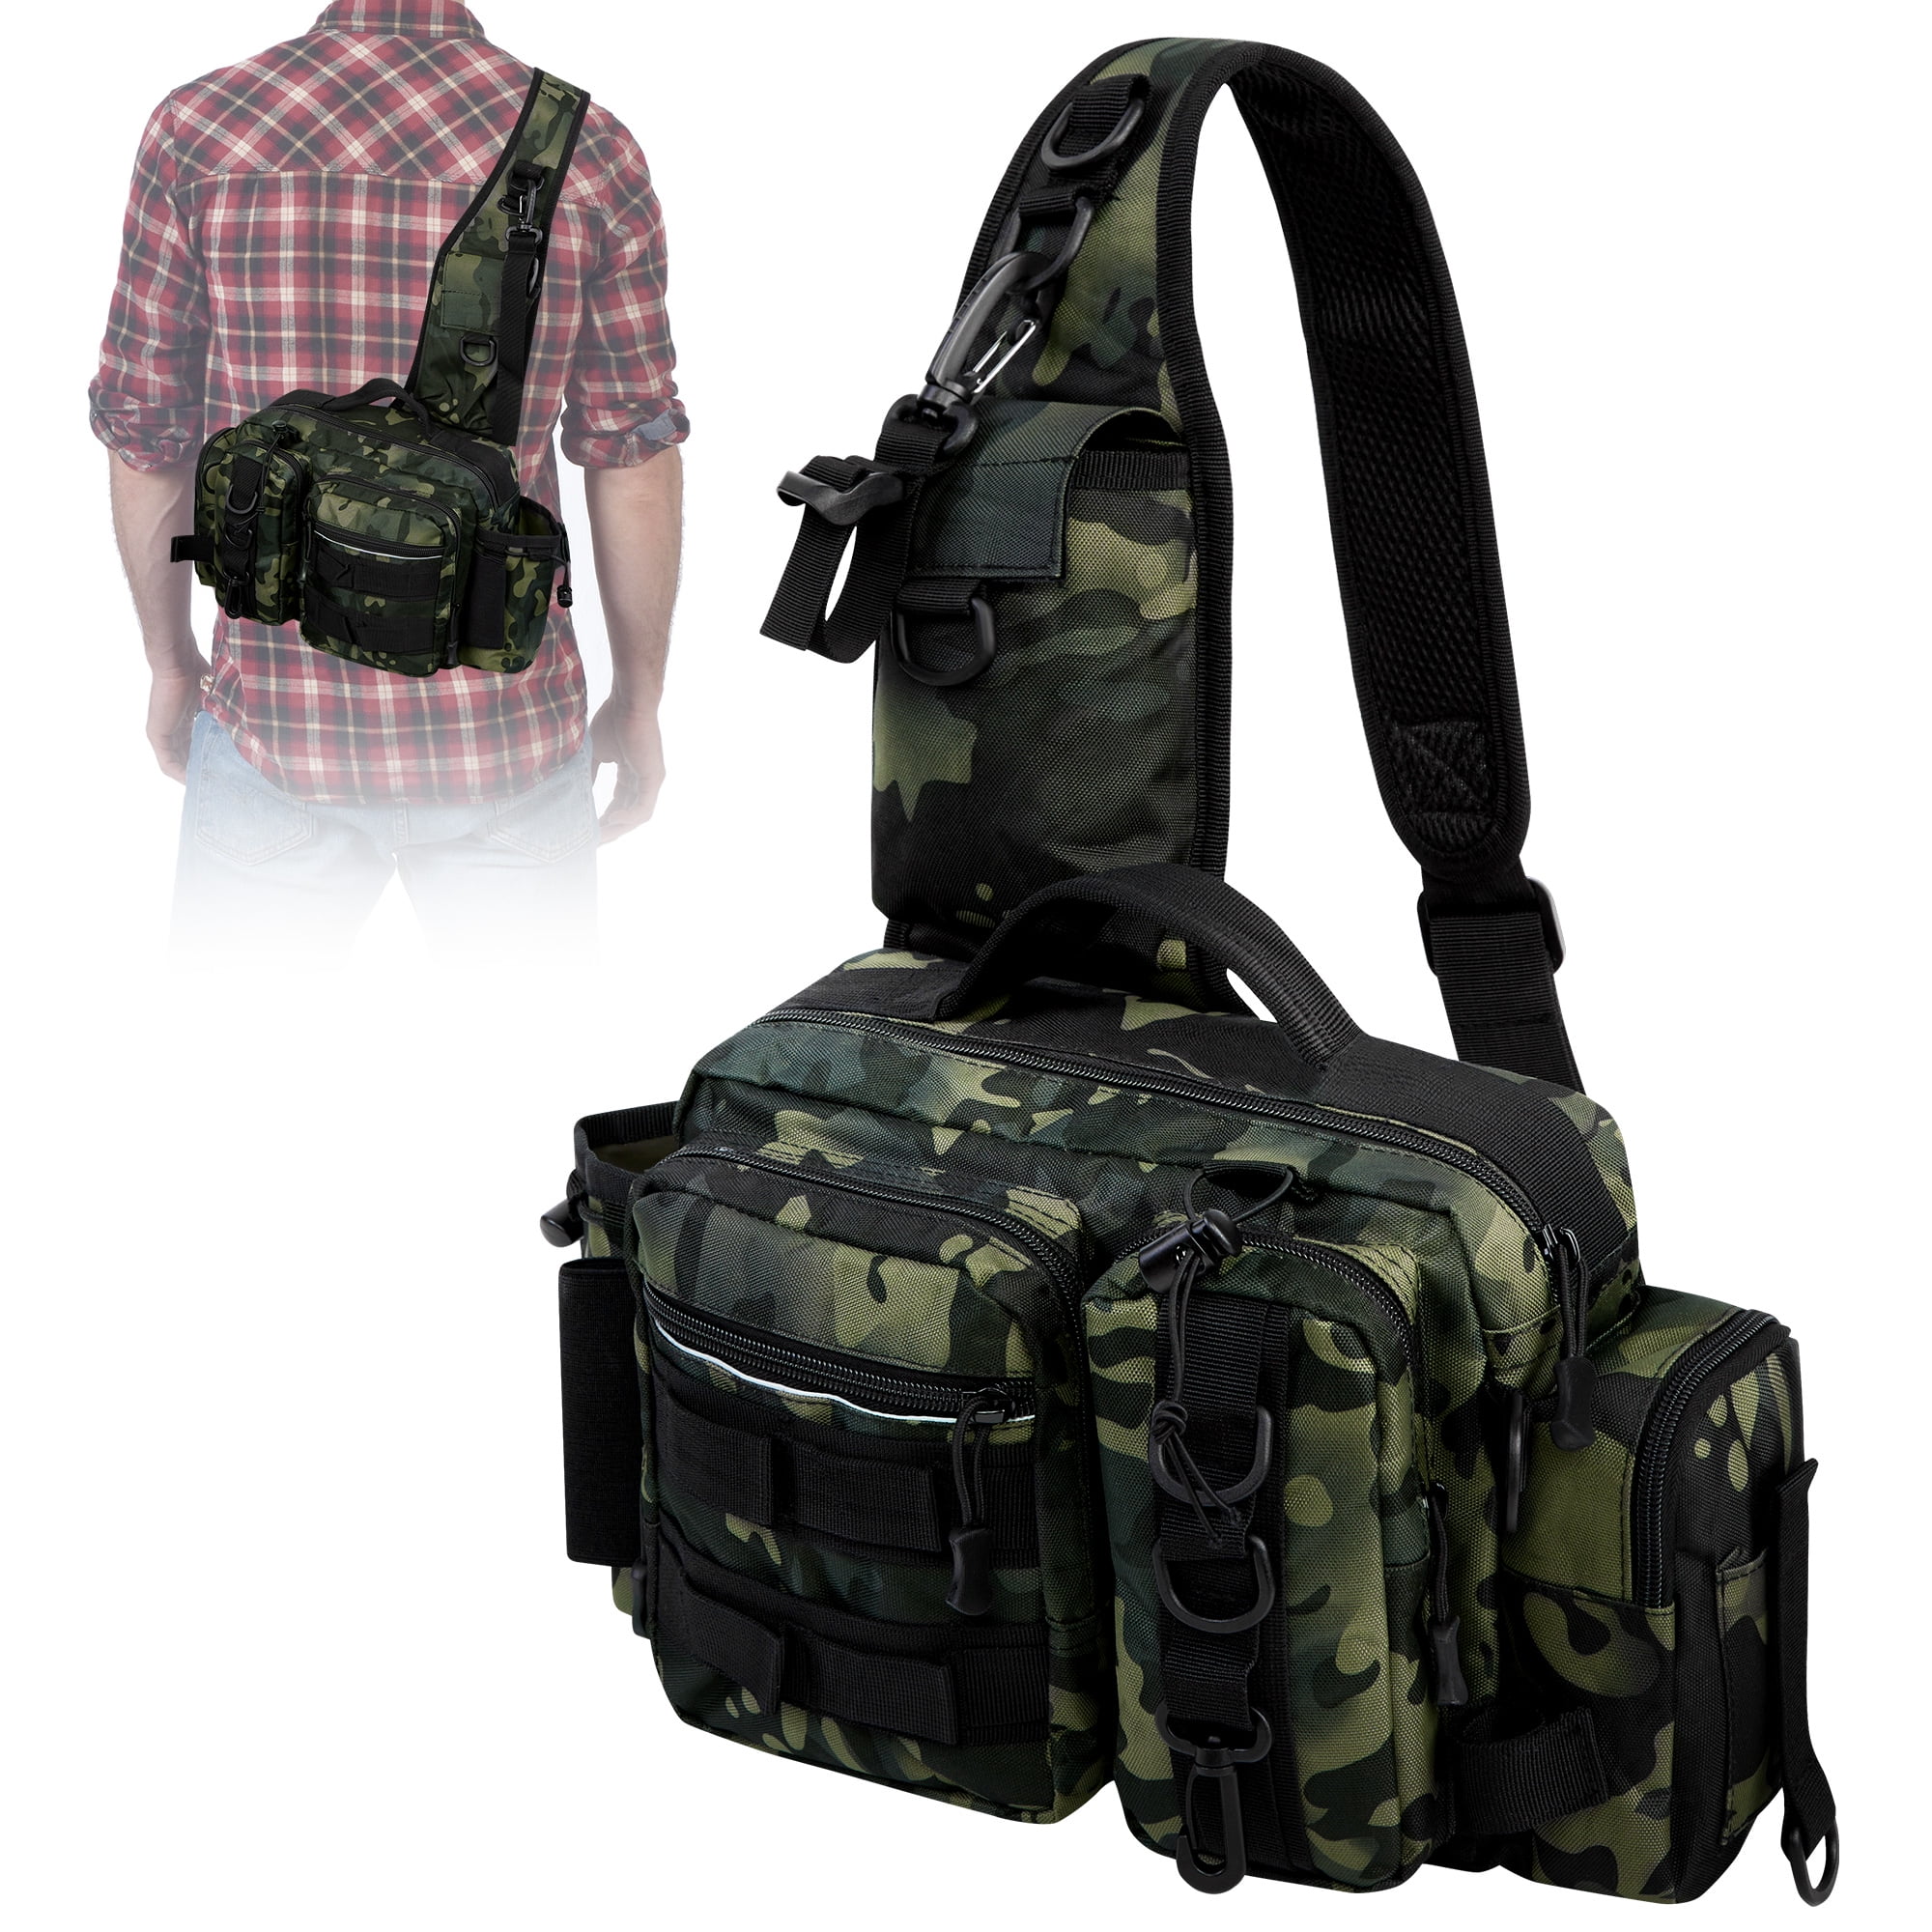  TOMSHOO Fishing Backpack Tackle Bag, Lightweight 20L